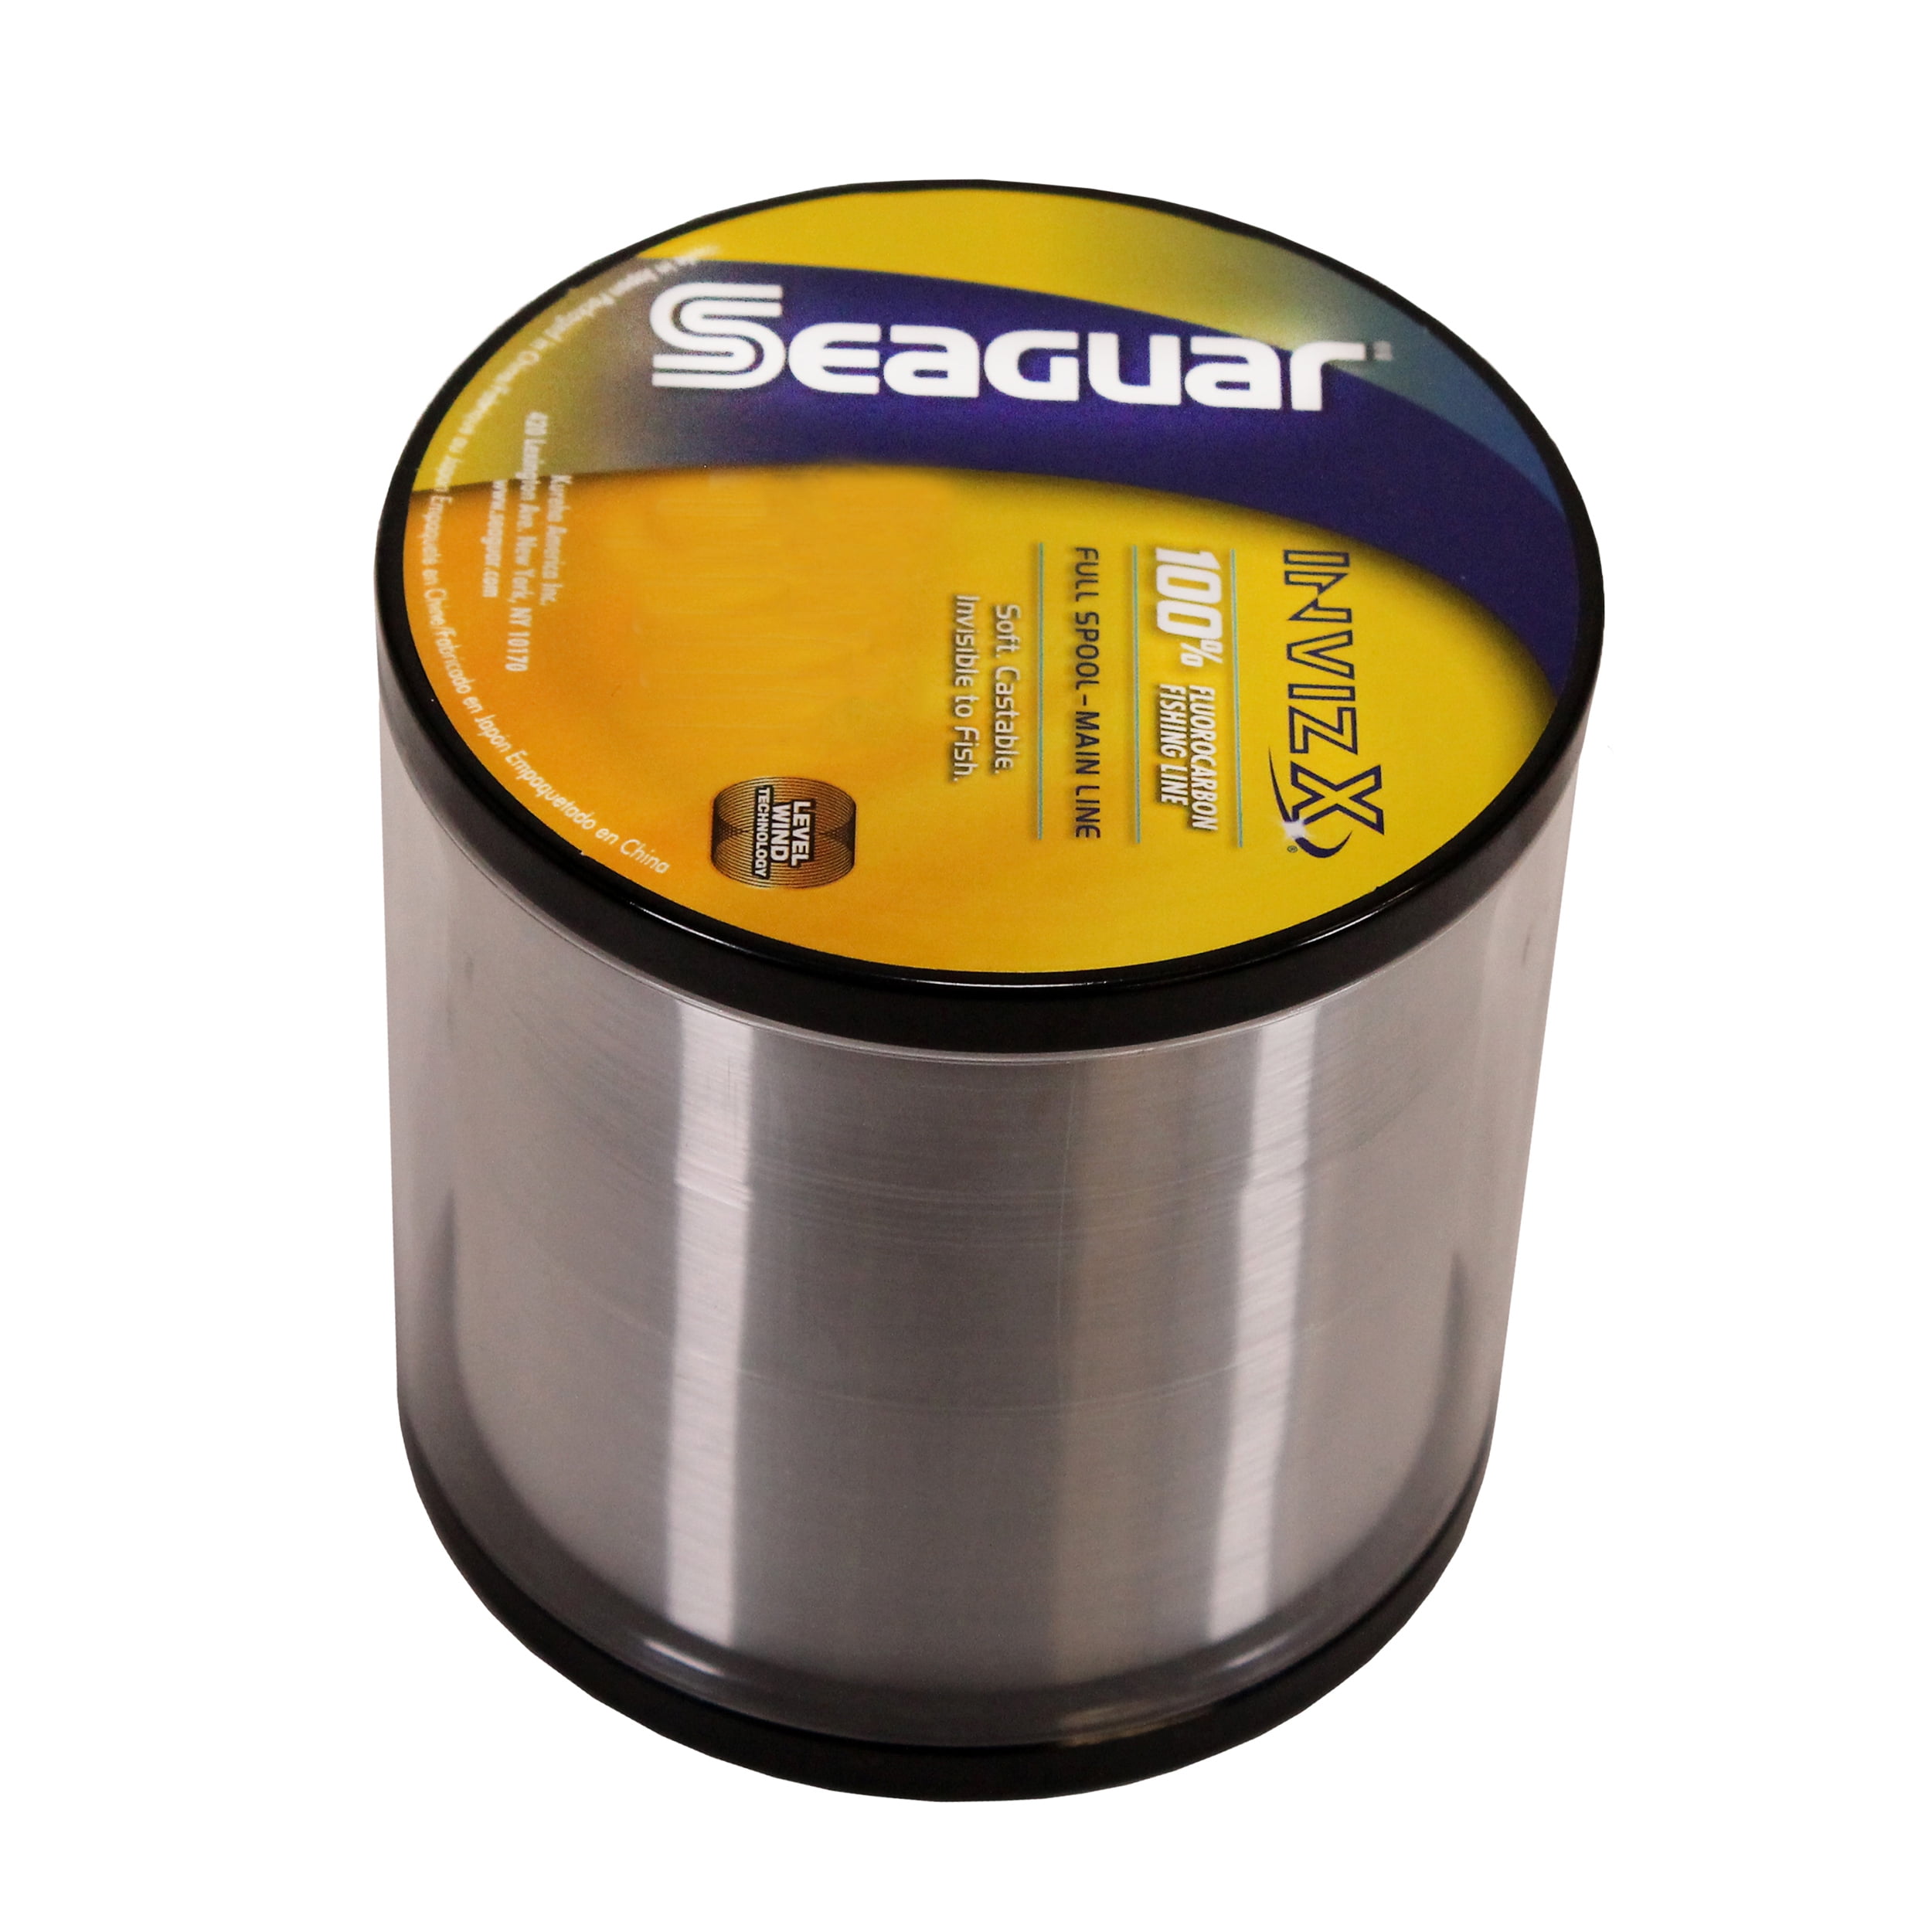 Seaguar InvizX 100% Fluorocarbon Fishing Line 10lbs, 1000yds Break